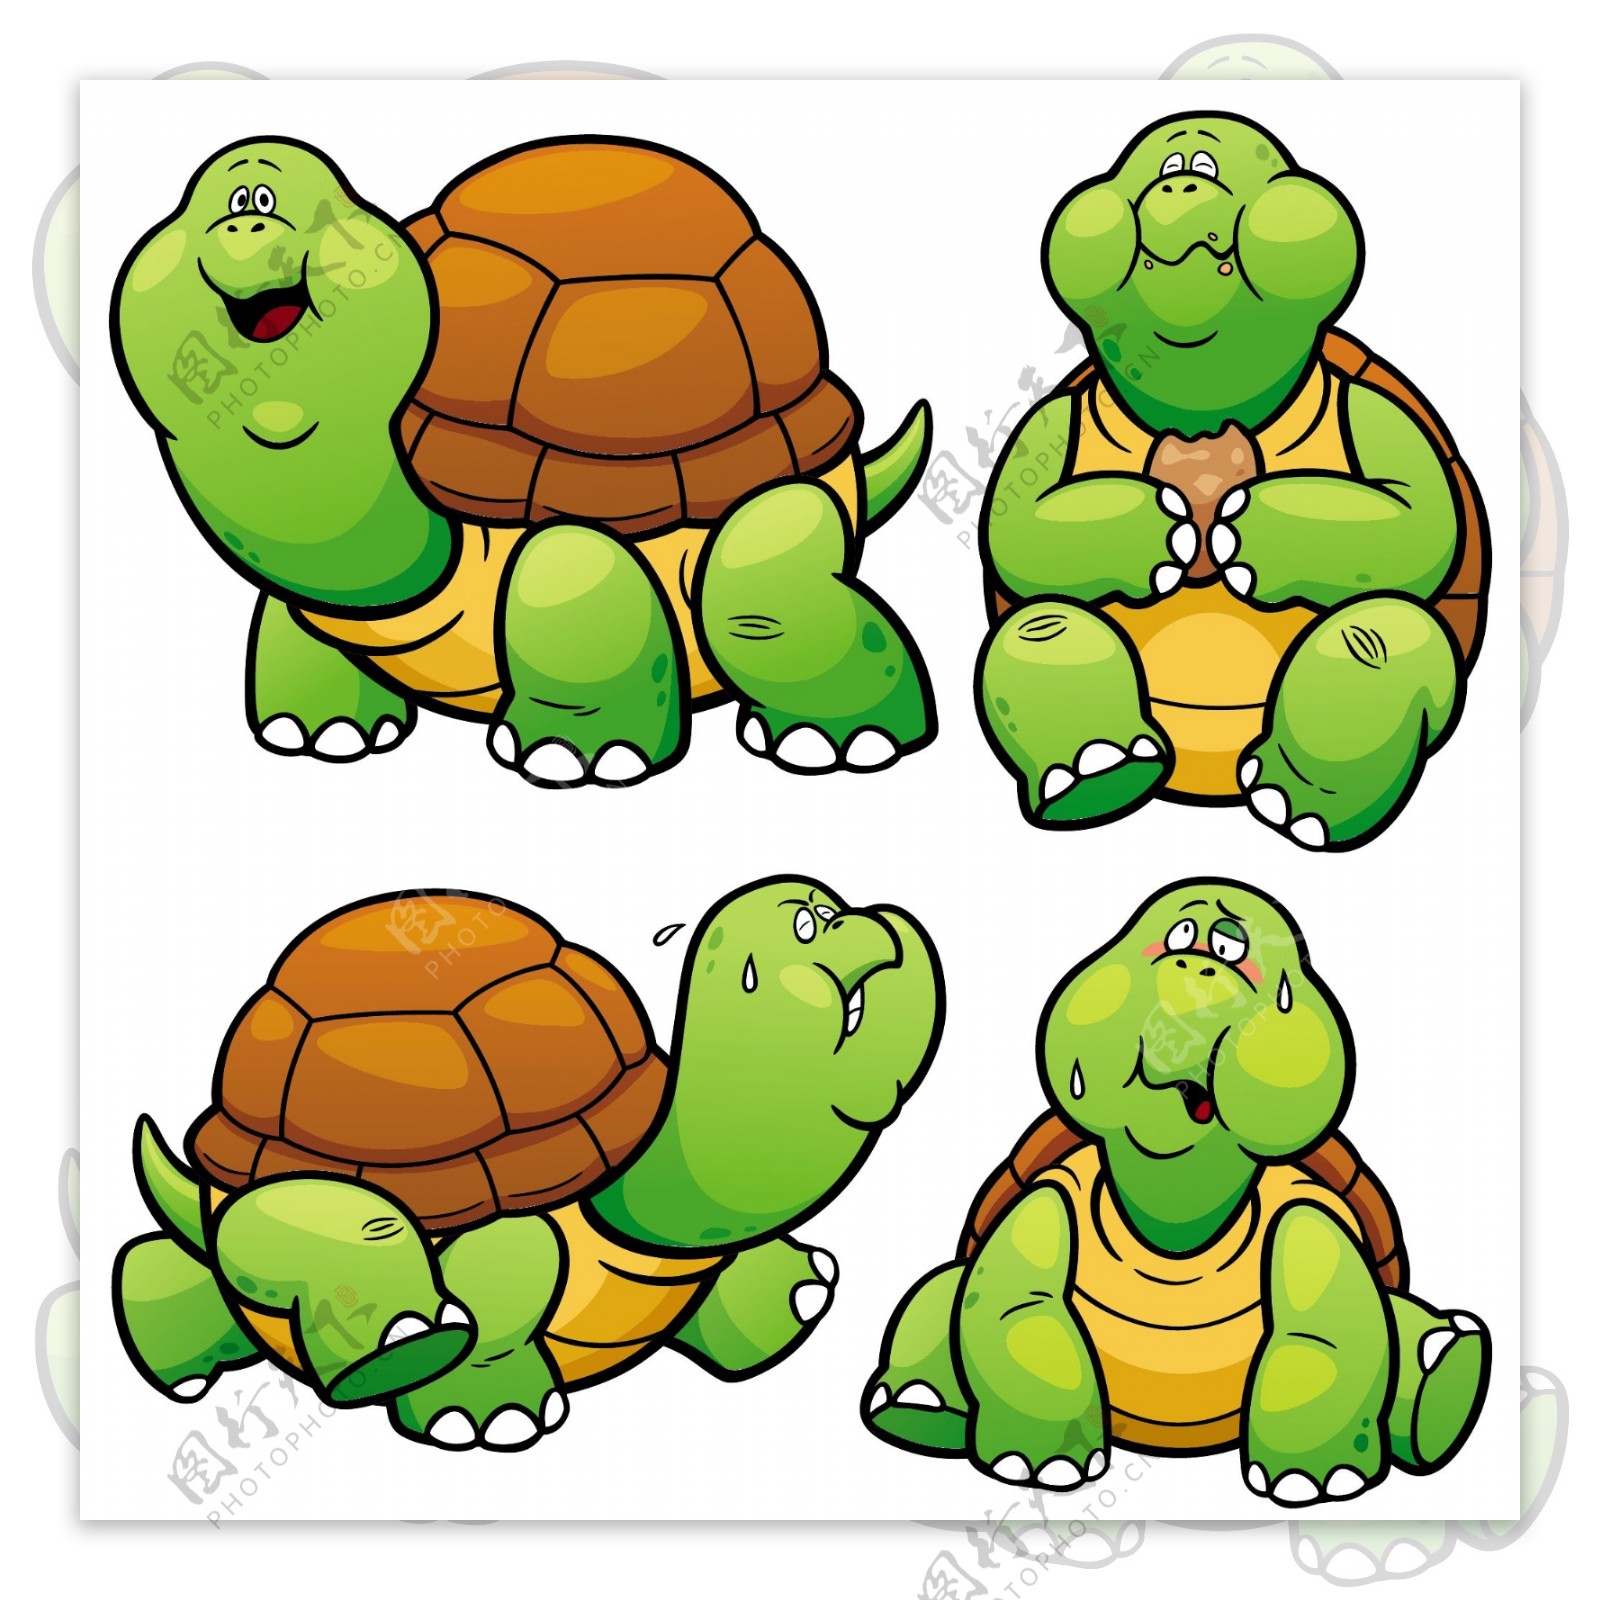 各种形态乌龟简笔画画法图片步骤 - 有点网 - 好手艺